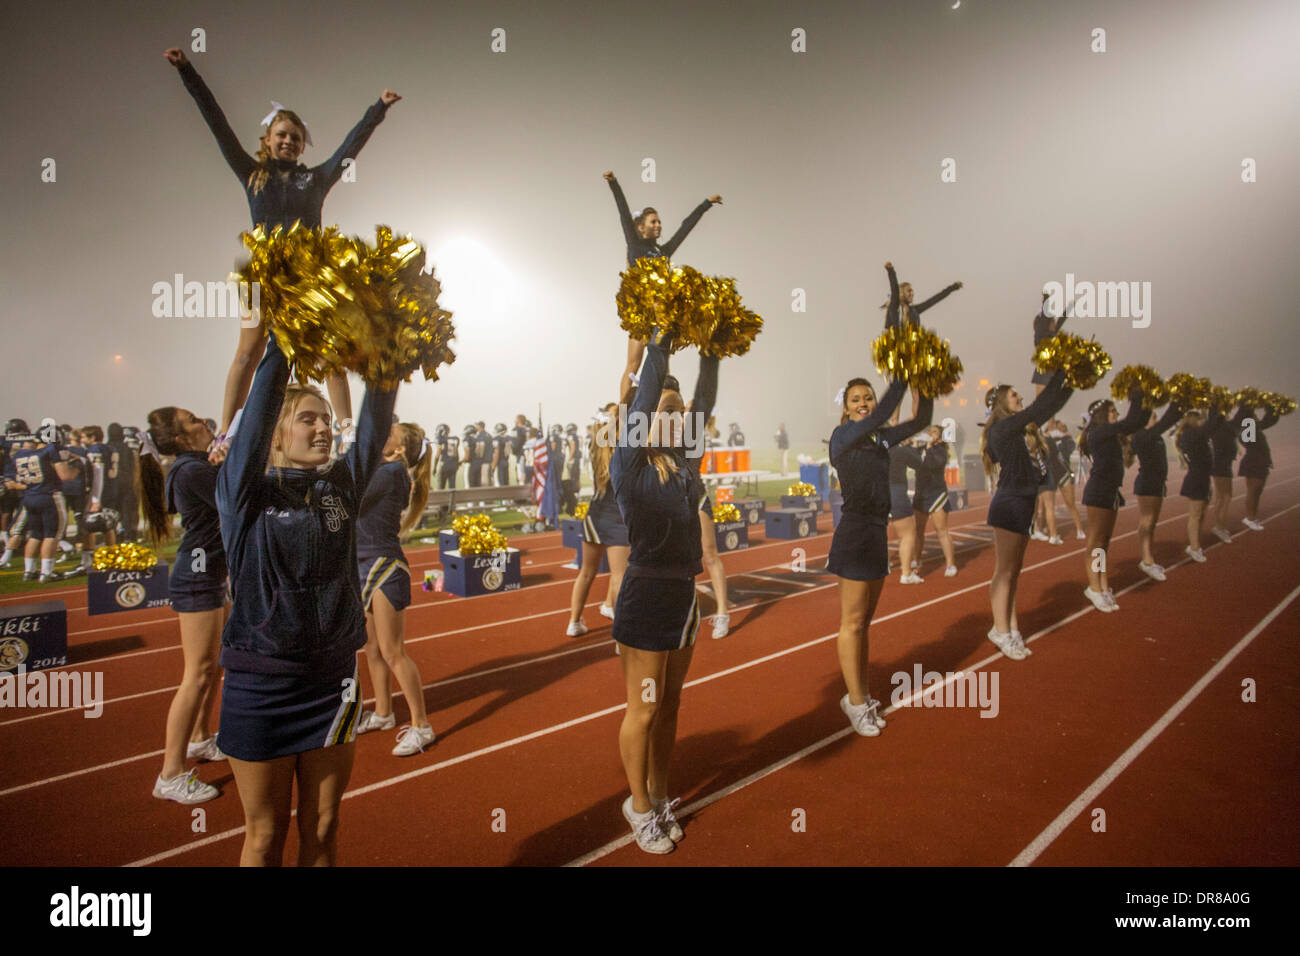 Cheerleaders divertir les spectateurs à un match de football de l'école nuit à San Juan Capistrano, CA, tenez les initiales du nom de l'école. Remarque 'flyers' sur les épaules des autres cheerleaders. Banque D'Images